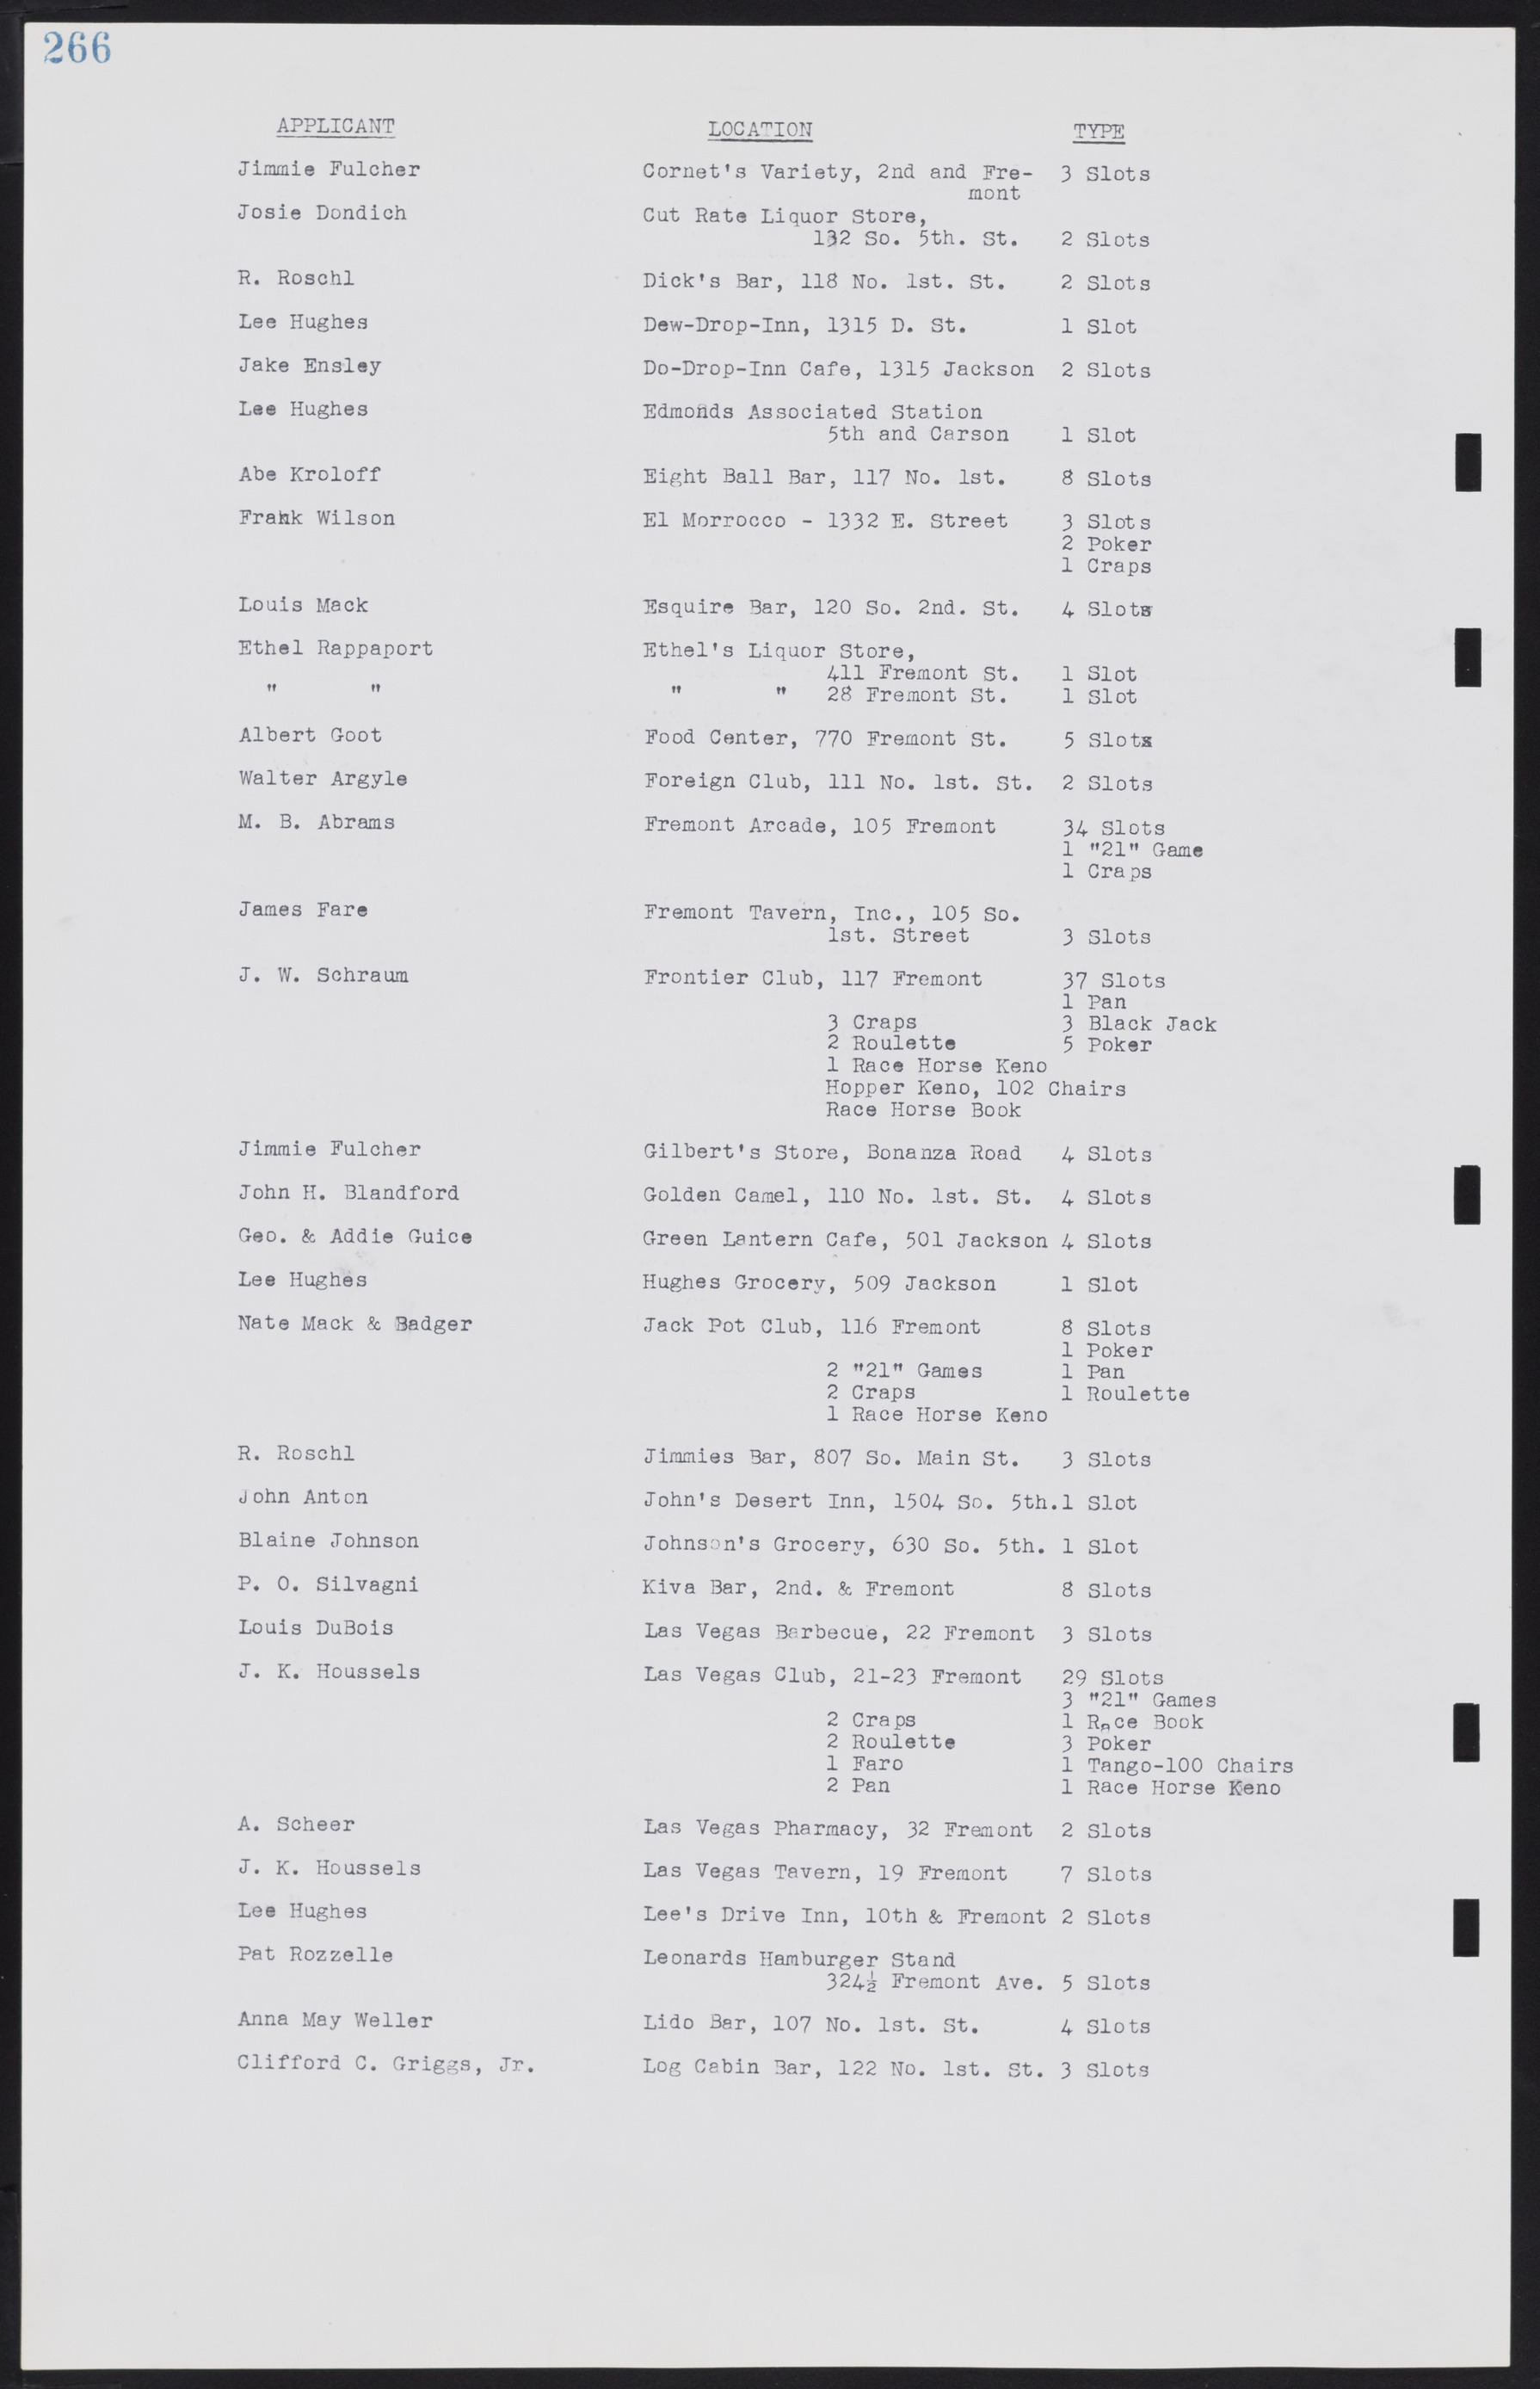 Las Vegas City Commission Minutes, August 11, 1942 to December 30, 1946, lvc000005-288